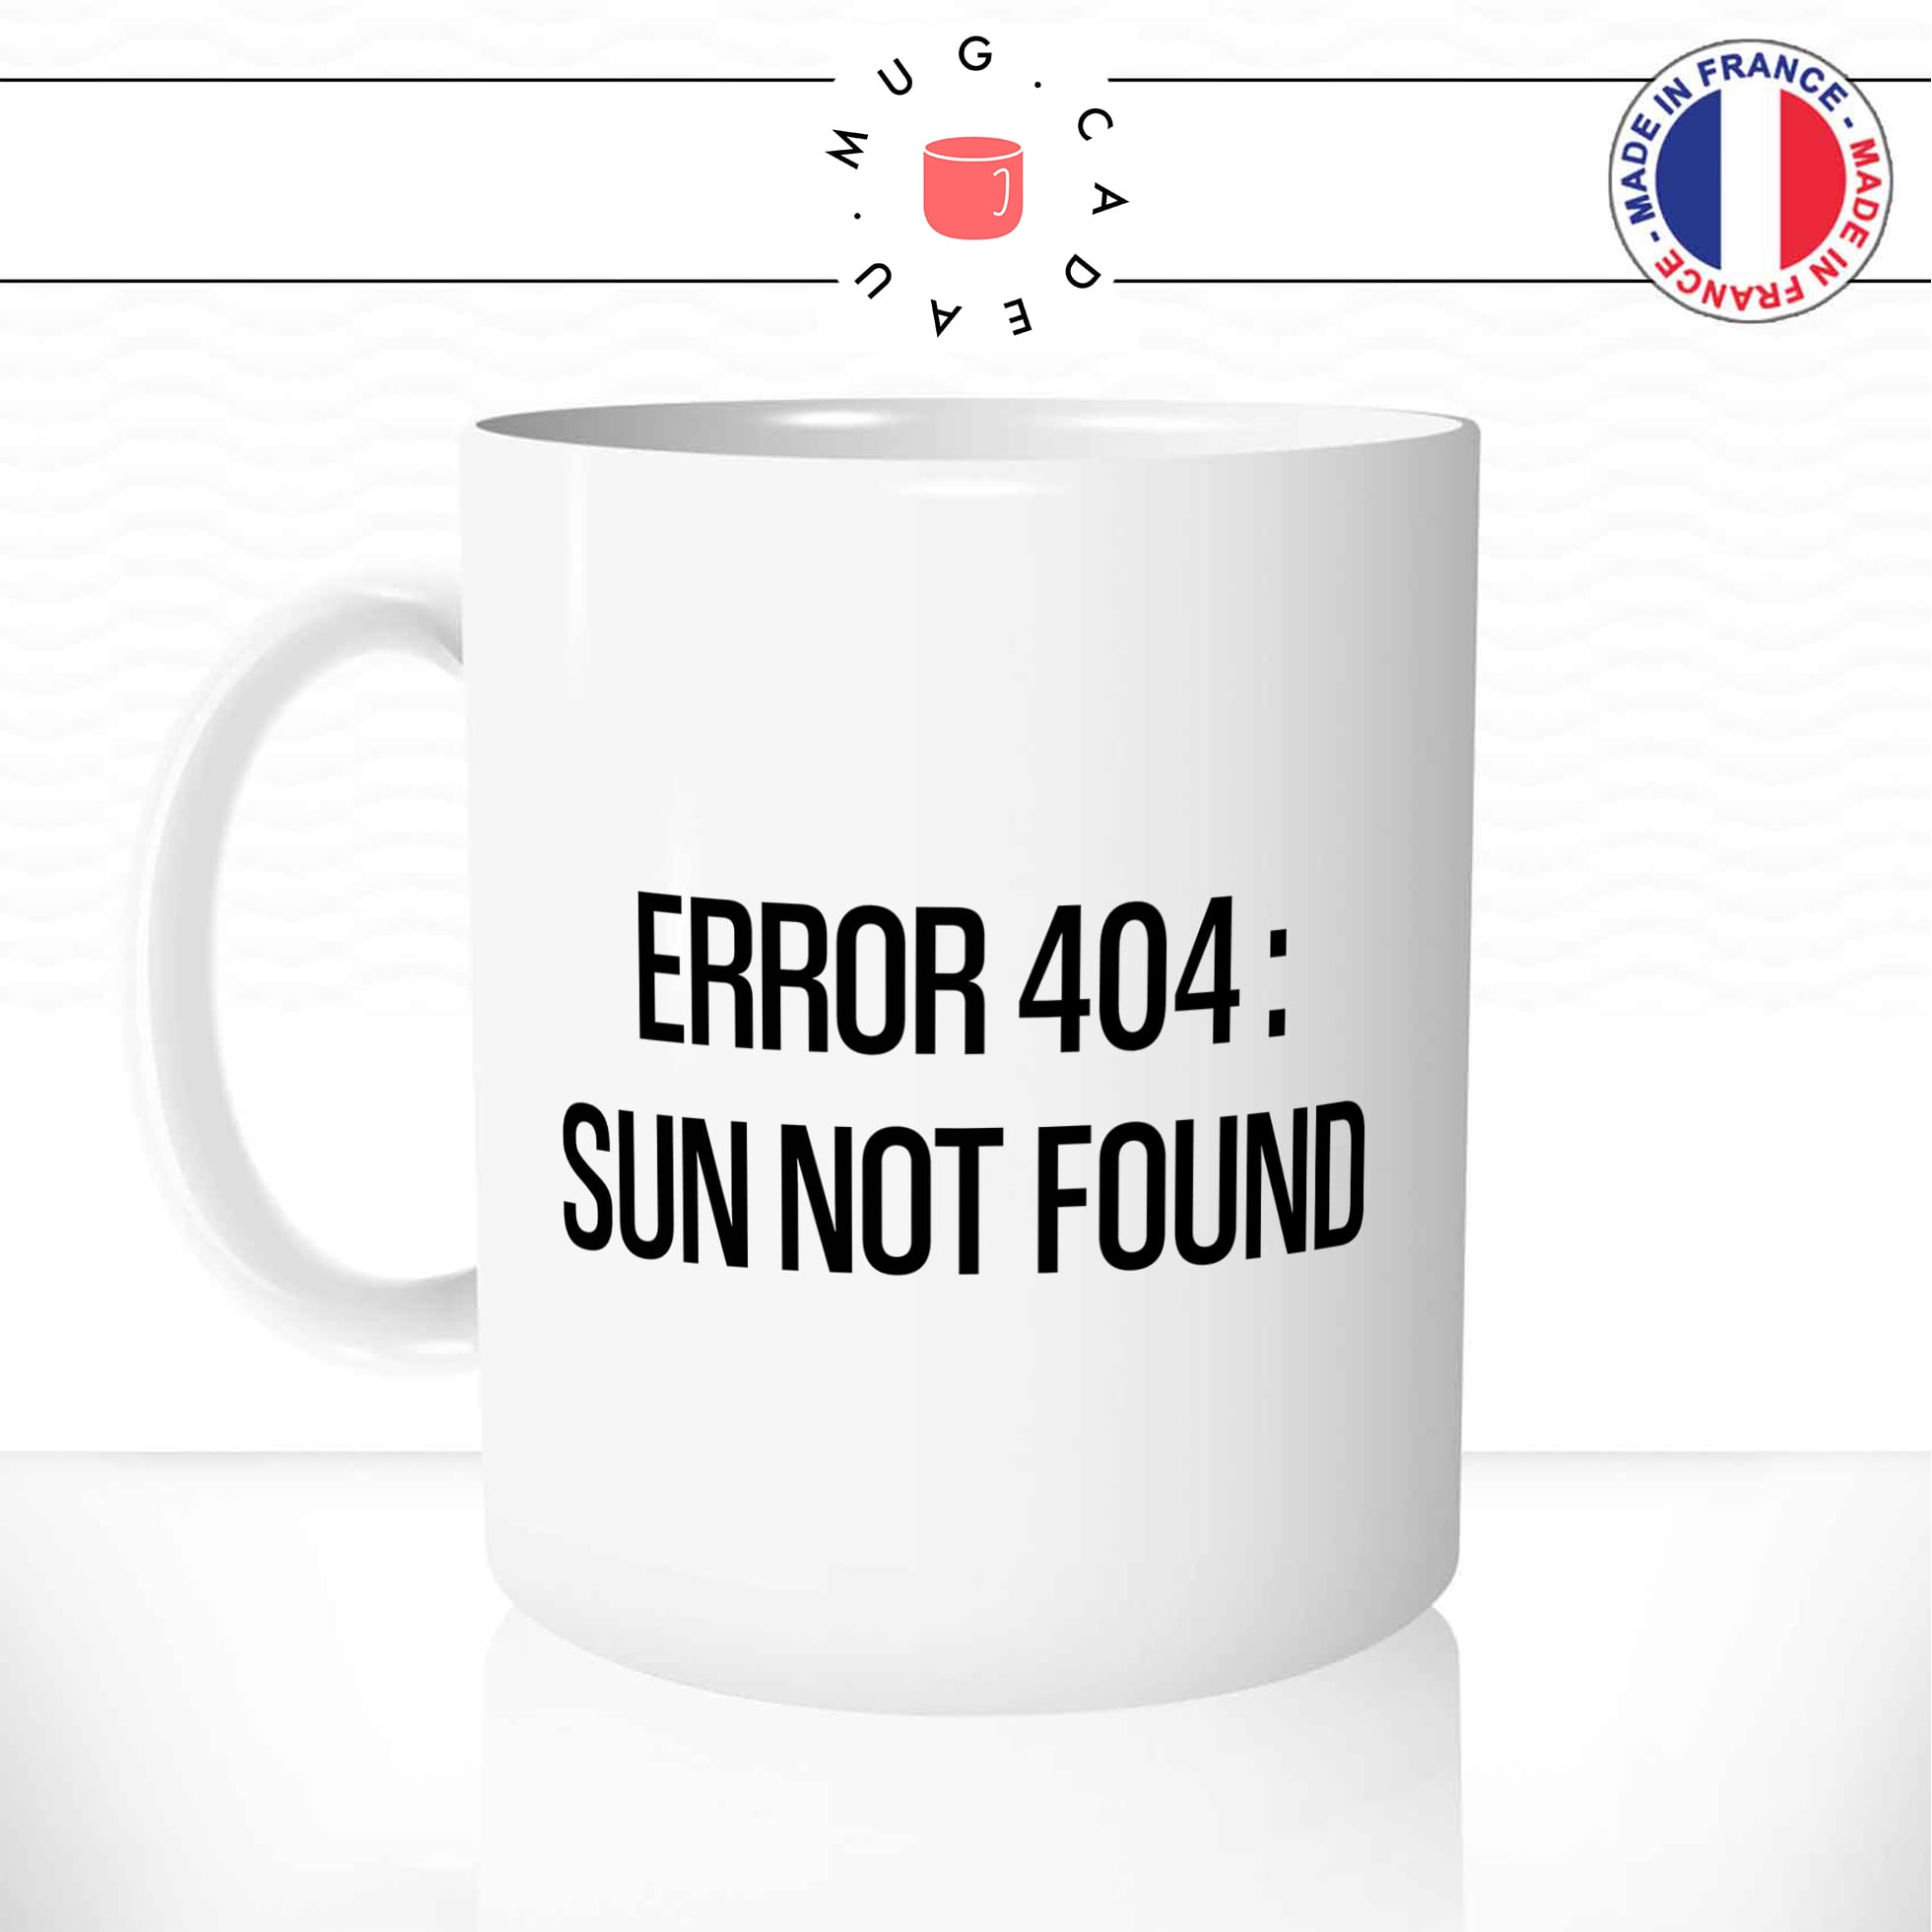 mug-tasse-error-404-internet-sun-not-found-soleil-pluie-humour-café-thé-idée-cadeau-original-personnalisable-min